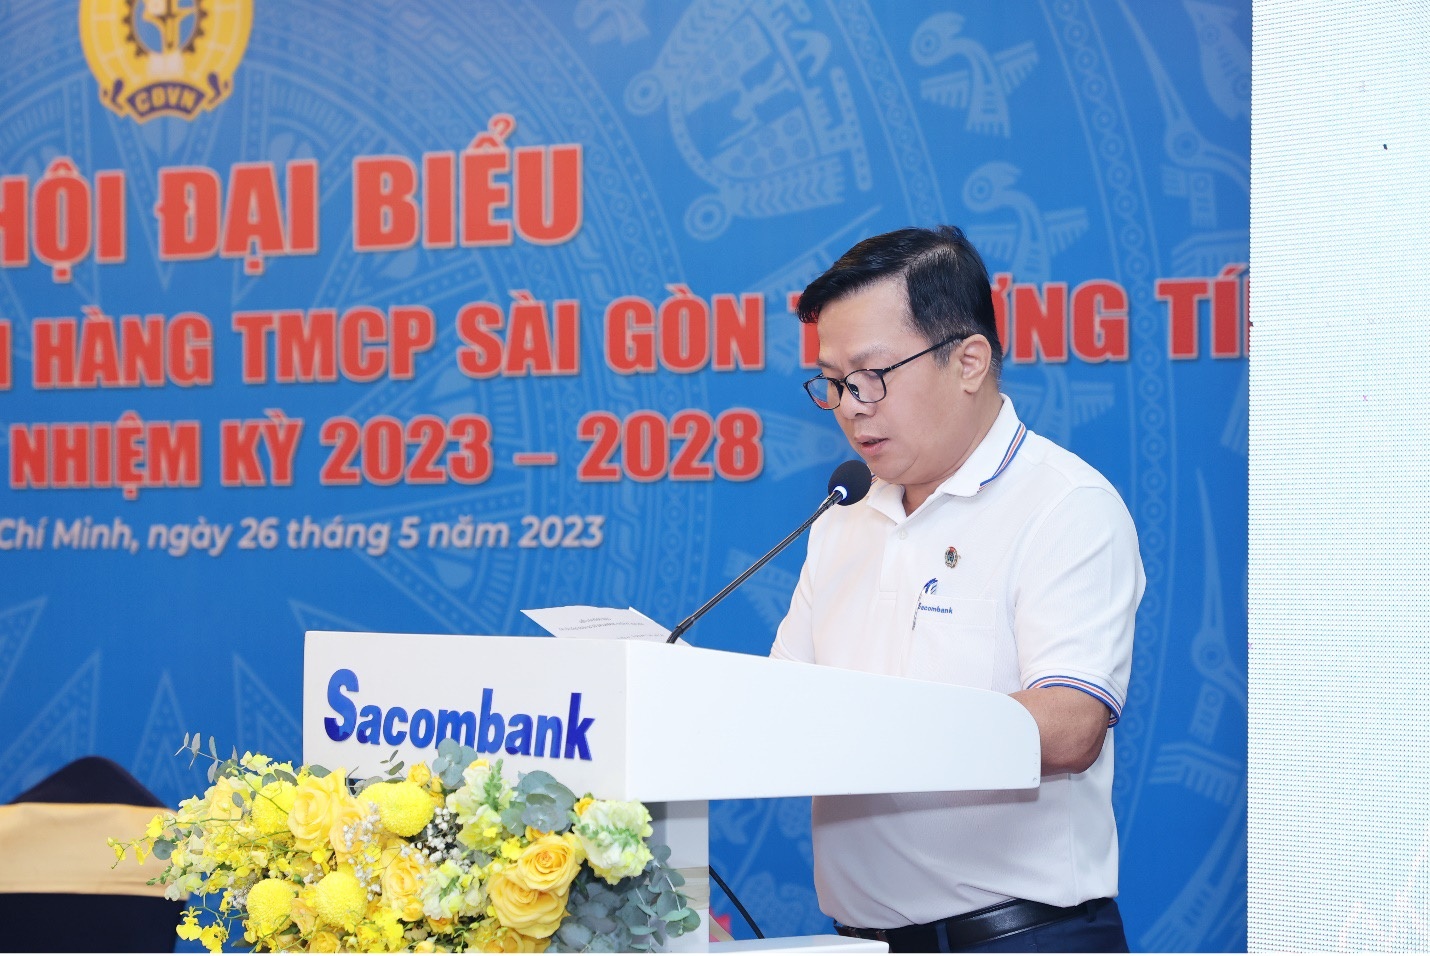 Ông Đào Nguyên Vũ – Đại diện Đoàn Chủ tịch báo cáo Tổng kết hoạt động CĐCS Sacombank (nhiệm kỳ 2019 - 2023) và Phương hướng hoạt động CĐCS nhiệm kỳ 2023 - 2028.